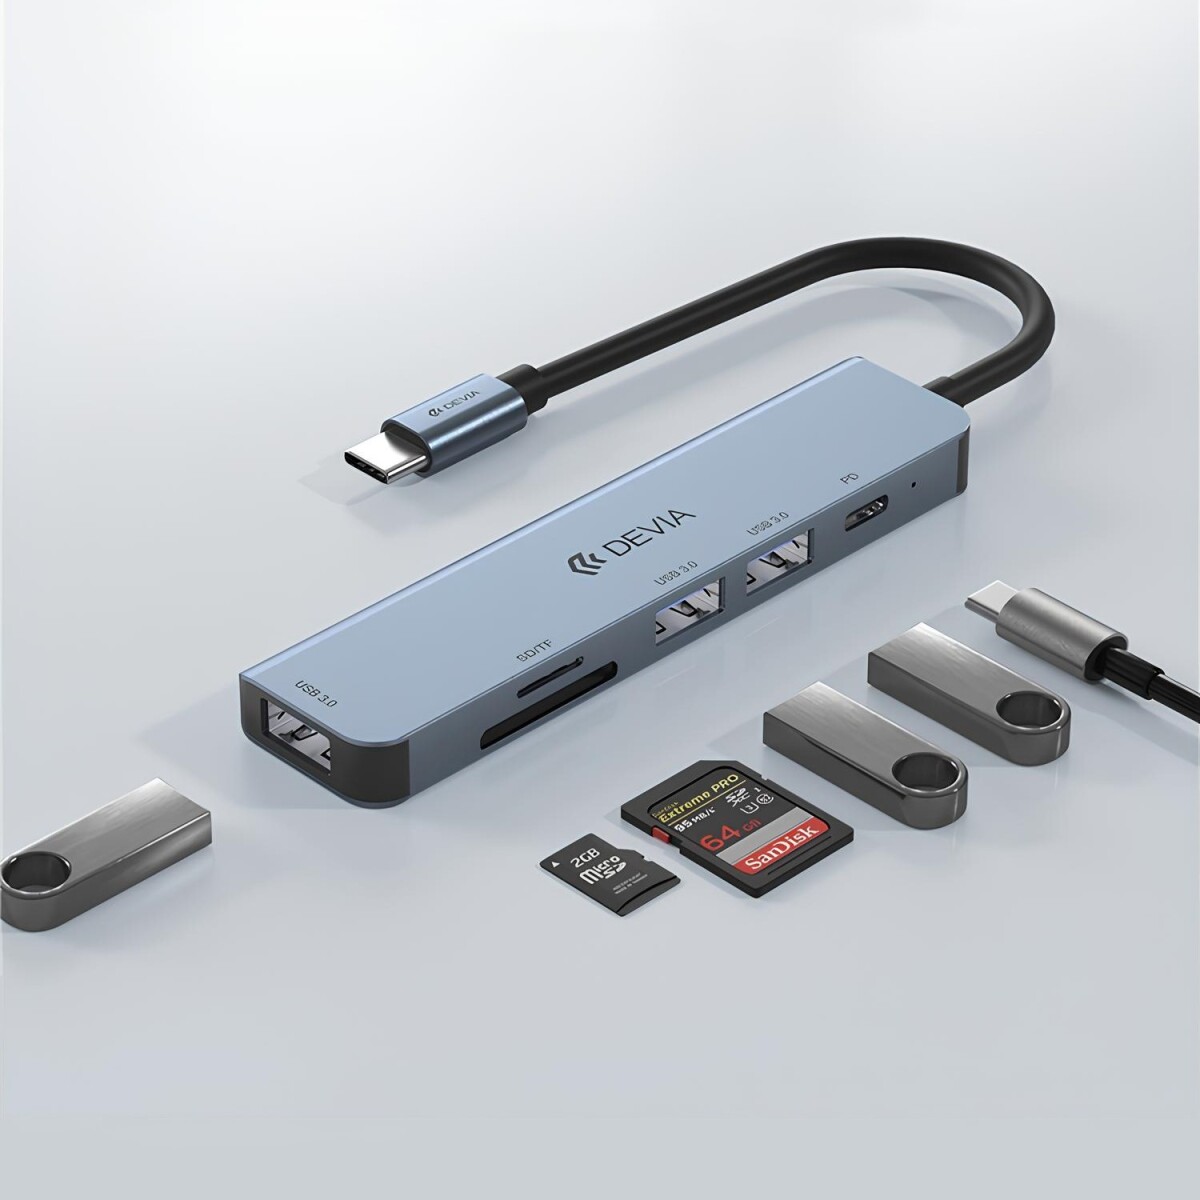 ADAPTADOR HUB 5 EN 1 USB-C A USB 3.0*3 + PD + LECTOR SD DEVIA LEOPARD (updated) Grey